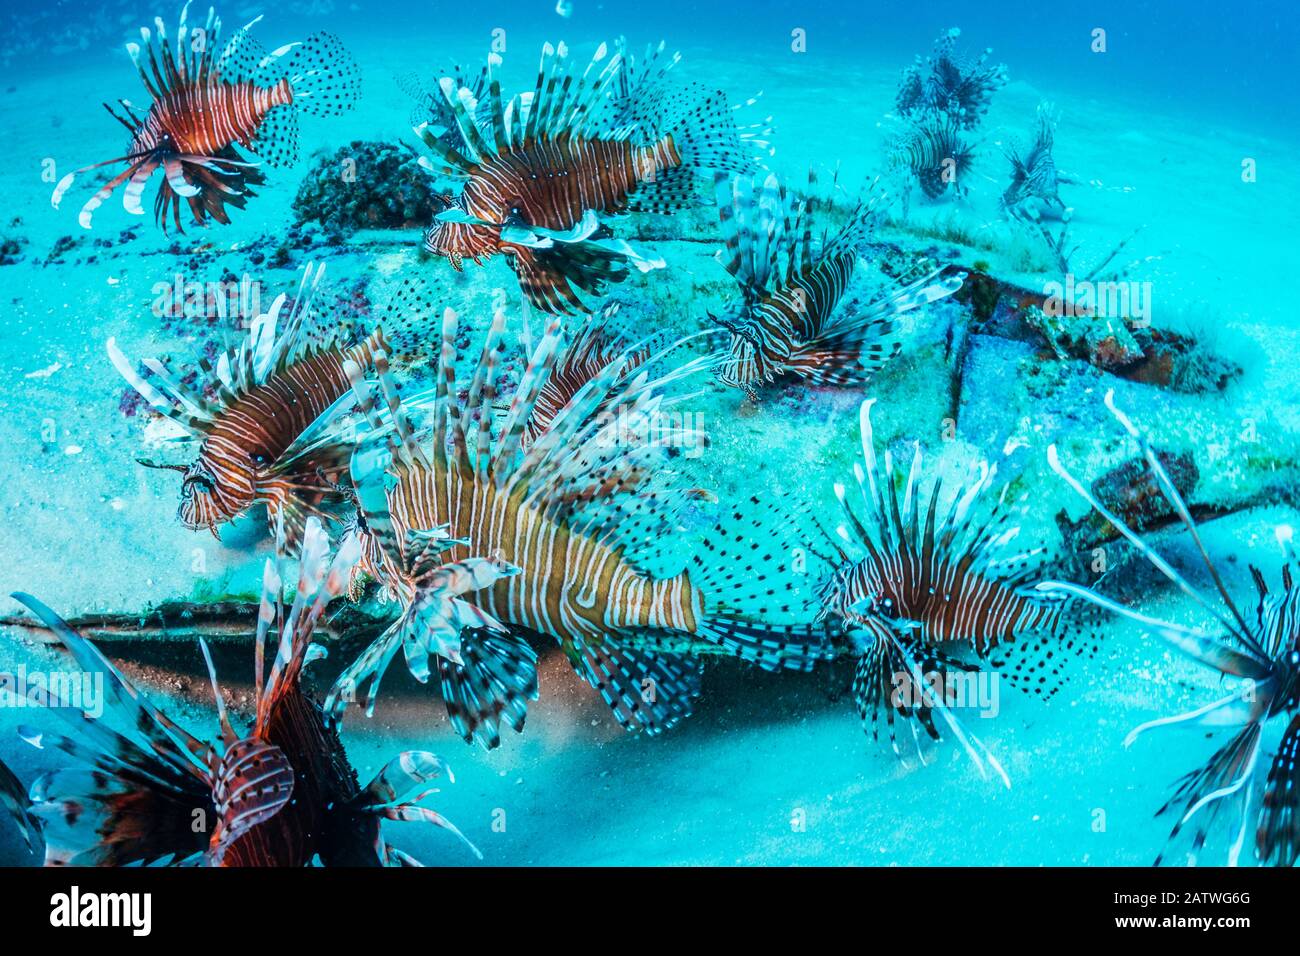 Lionfish invasivo (Pterois volitans) che hanno preso il controllo e stanno pulendo il pesce nativo nell'oceano Atlantico. Le densità più elevate si trovano nel golfo settentrionale del Messico. Destin, Florida, Stati Uniti. Foto Stock